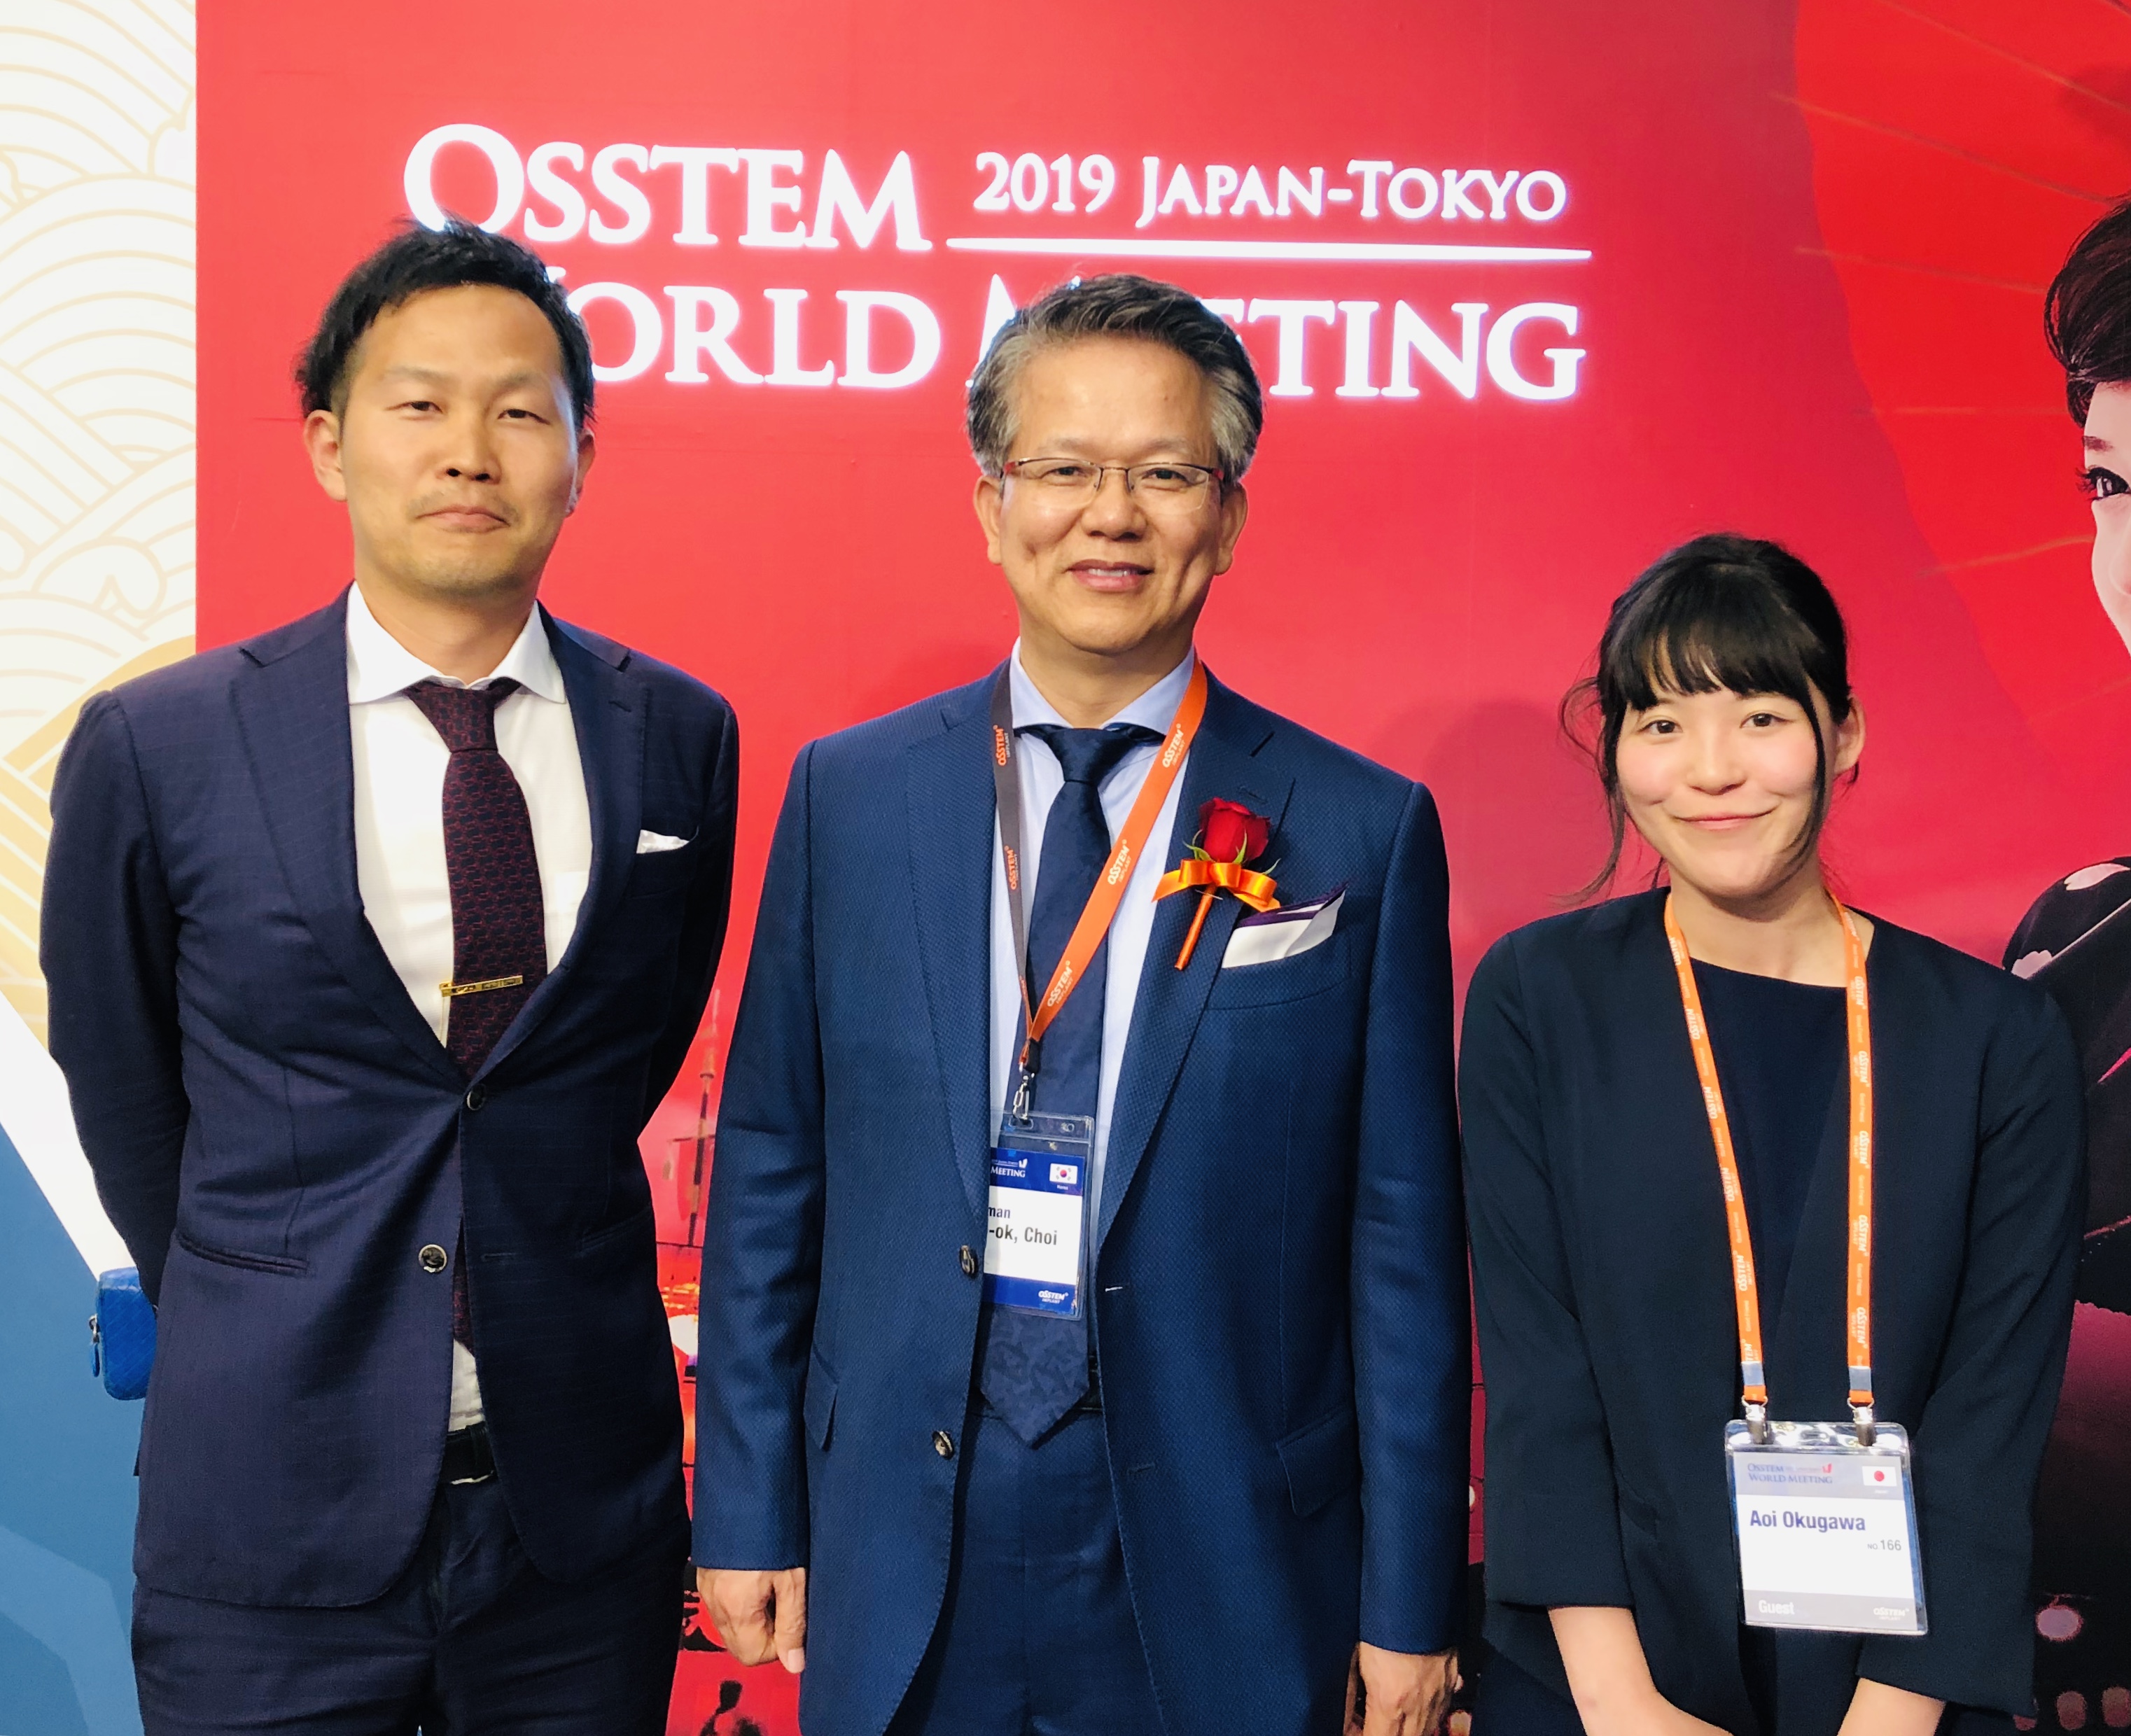 Osstem world meeting 2019